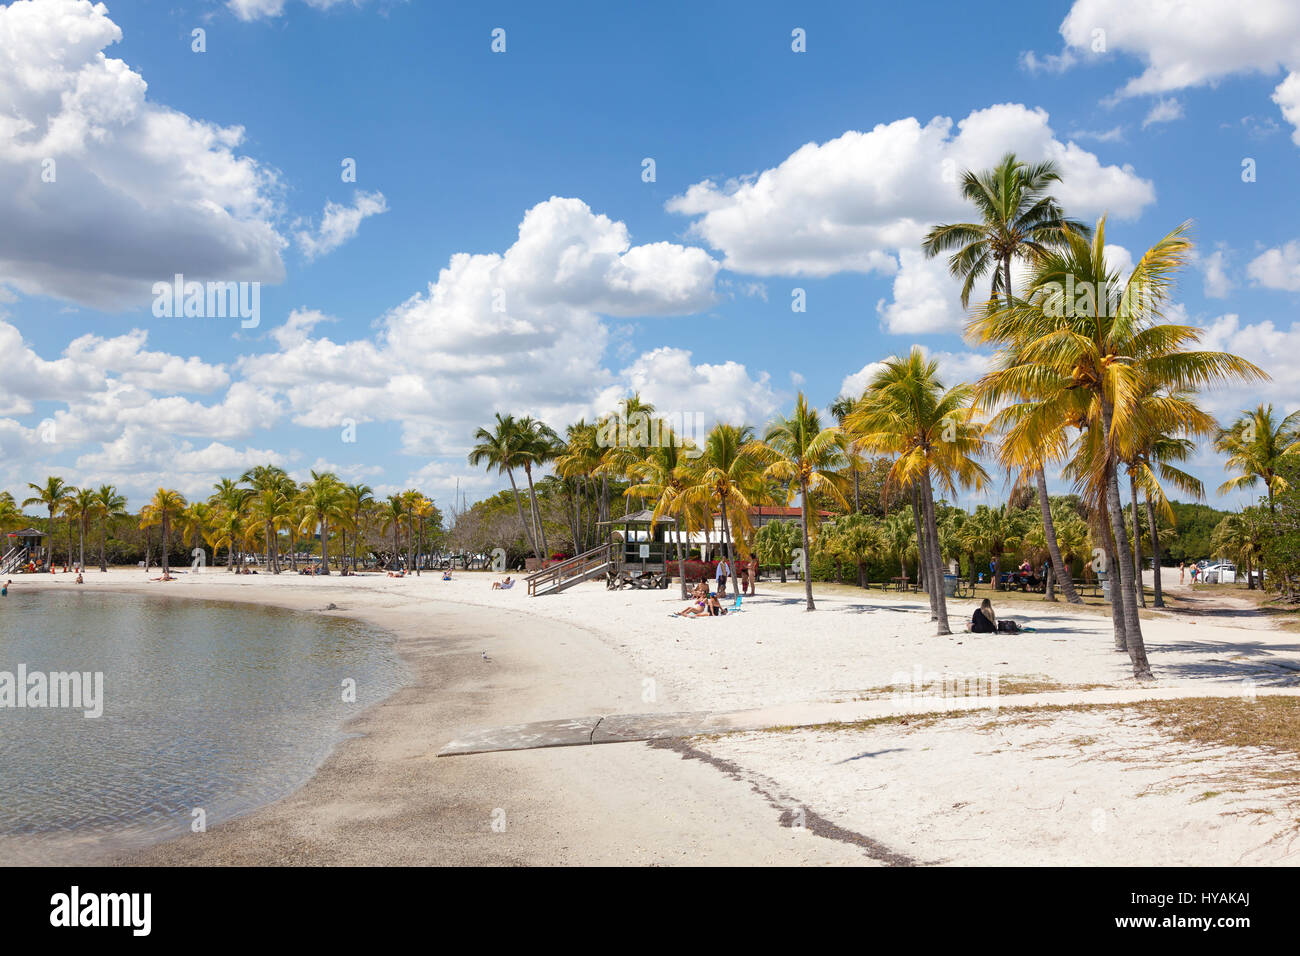 MIAMI, USA - MAR 10, 2017: Matheson Hammock Park beach in Miami, Florida, United States Stock Photo